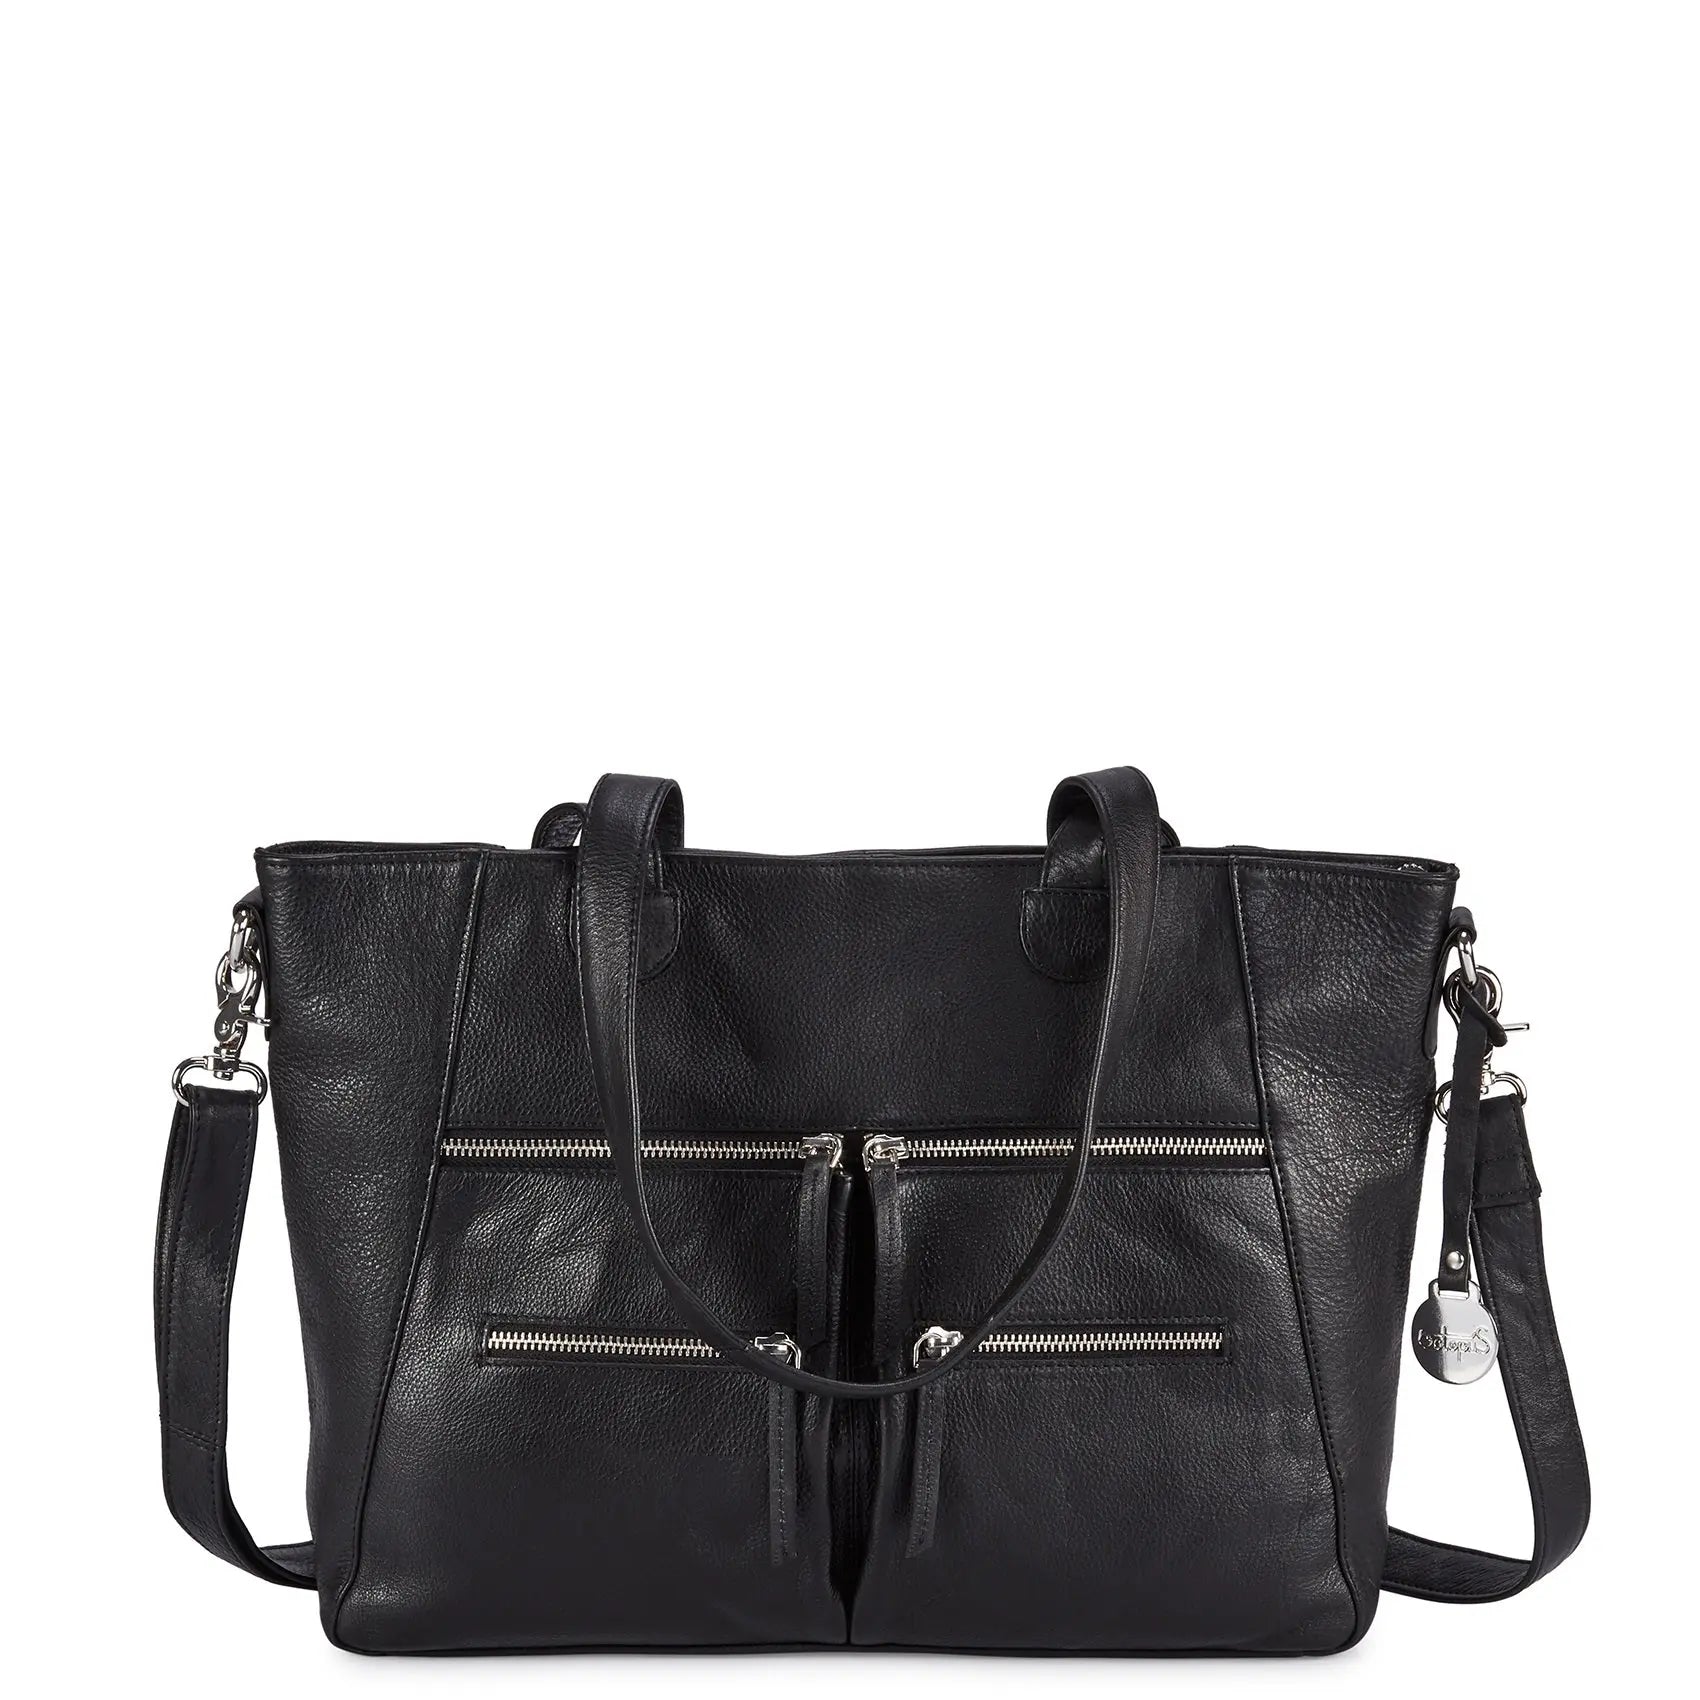 Billede af Style Nimbus i sort. Fantastisk smuk lædertaske, til hånd, skulder & crossbody, i mellemstørrelse